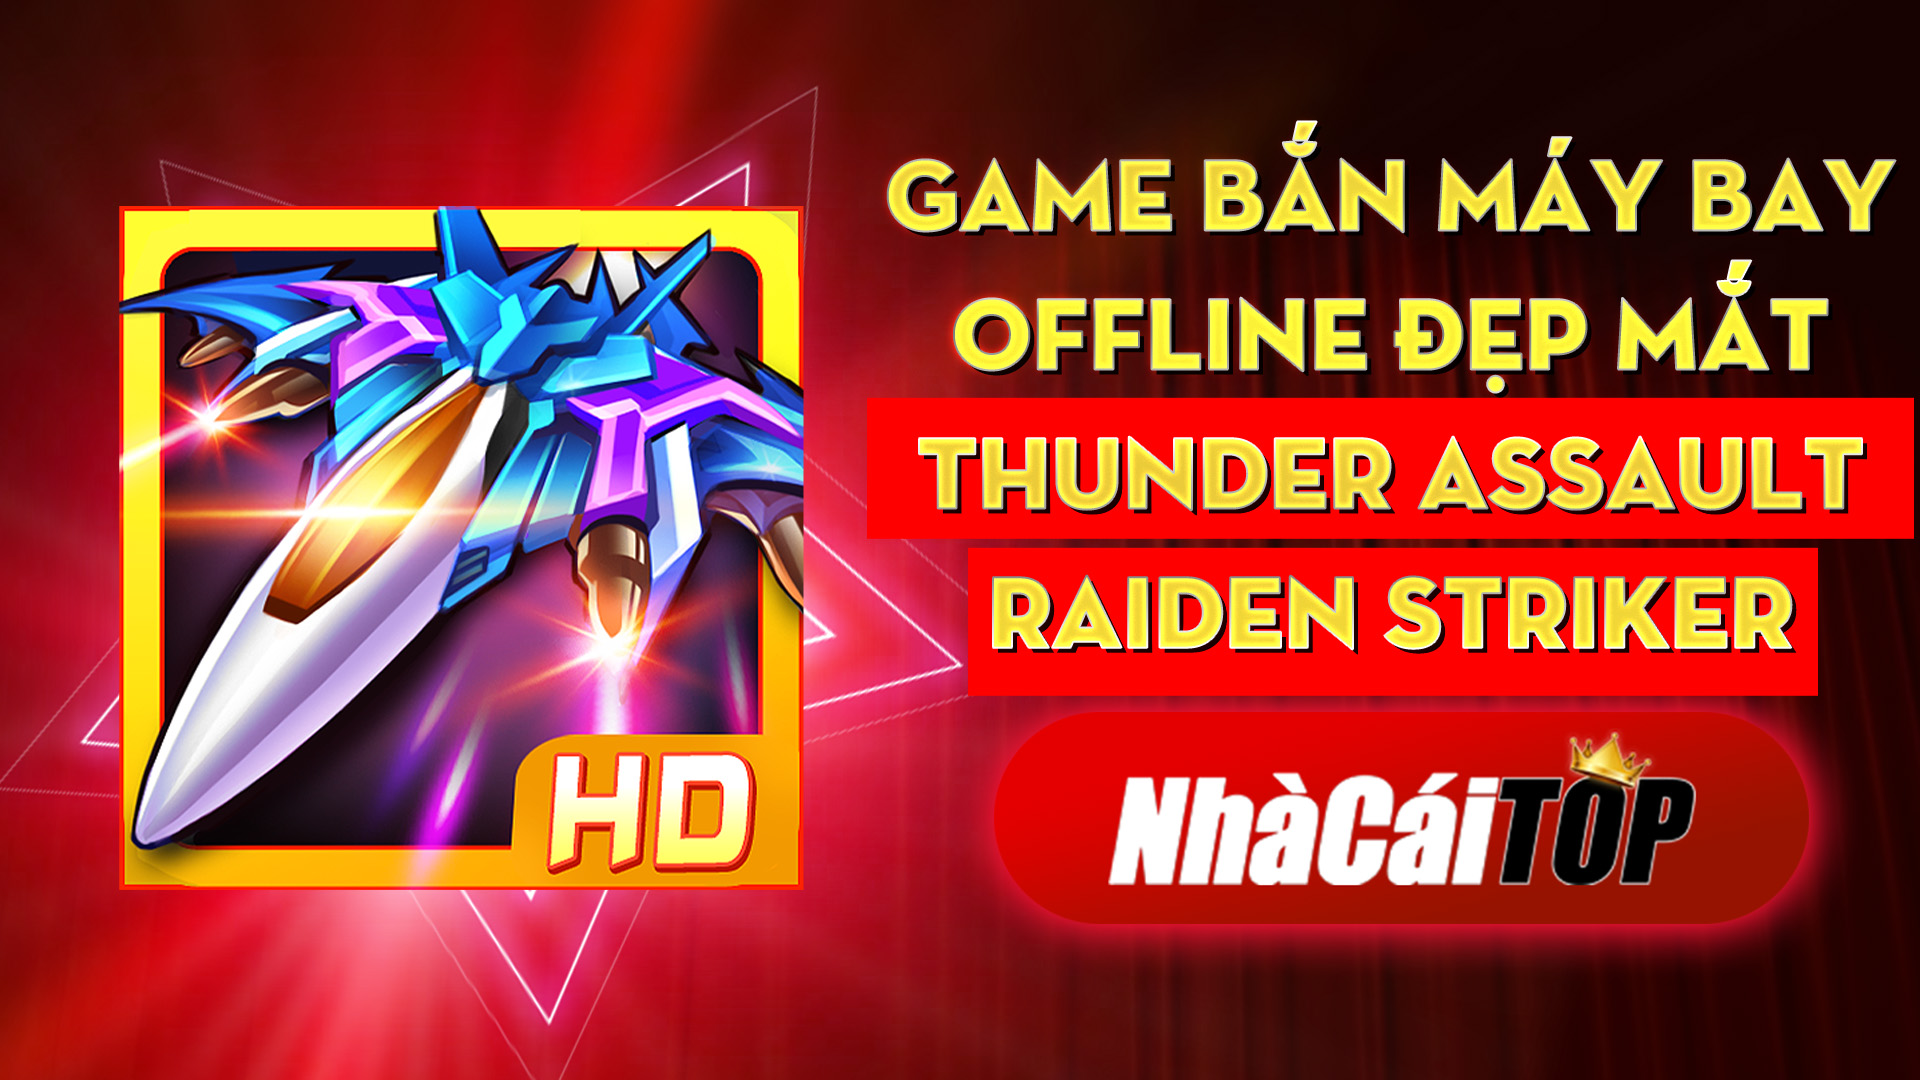 318 Game Ban May Bay Offline Djep Mat Thunder Assault Raiden Striker